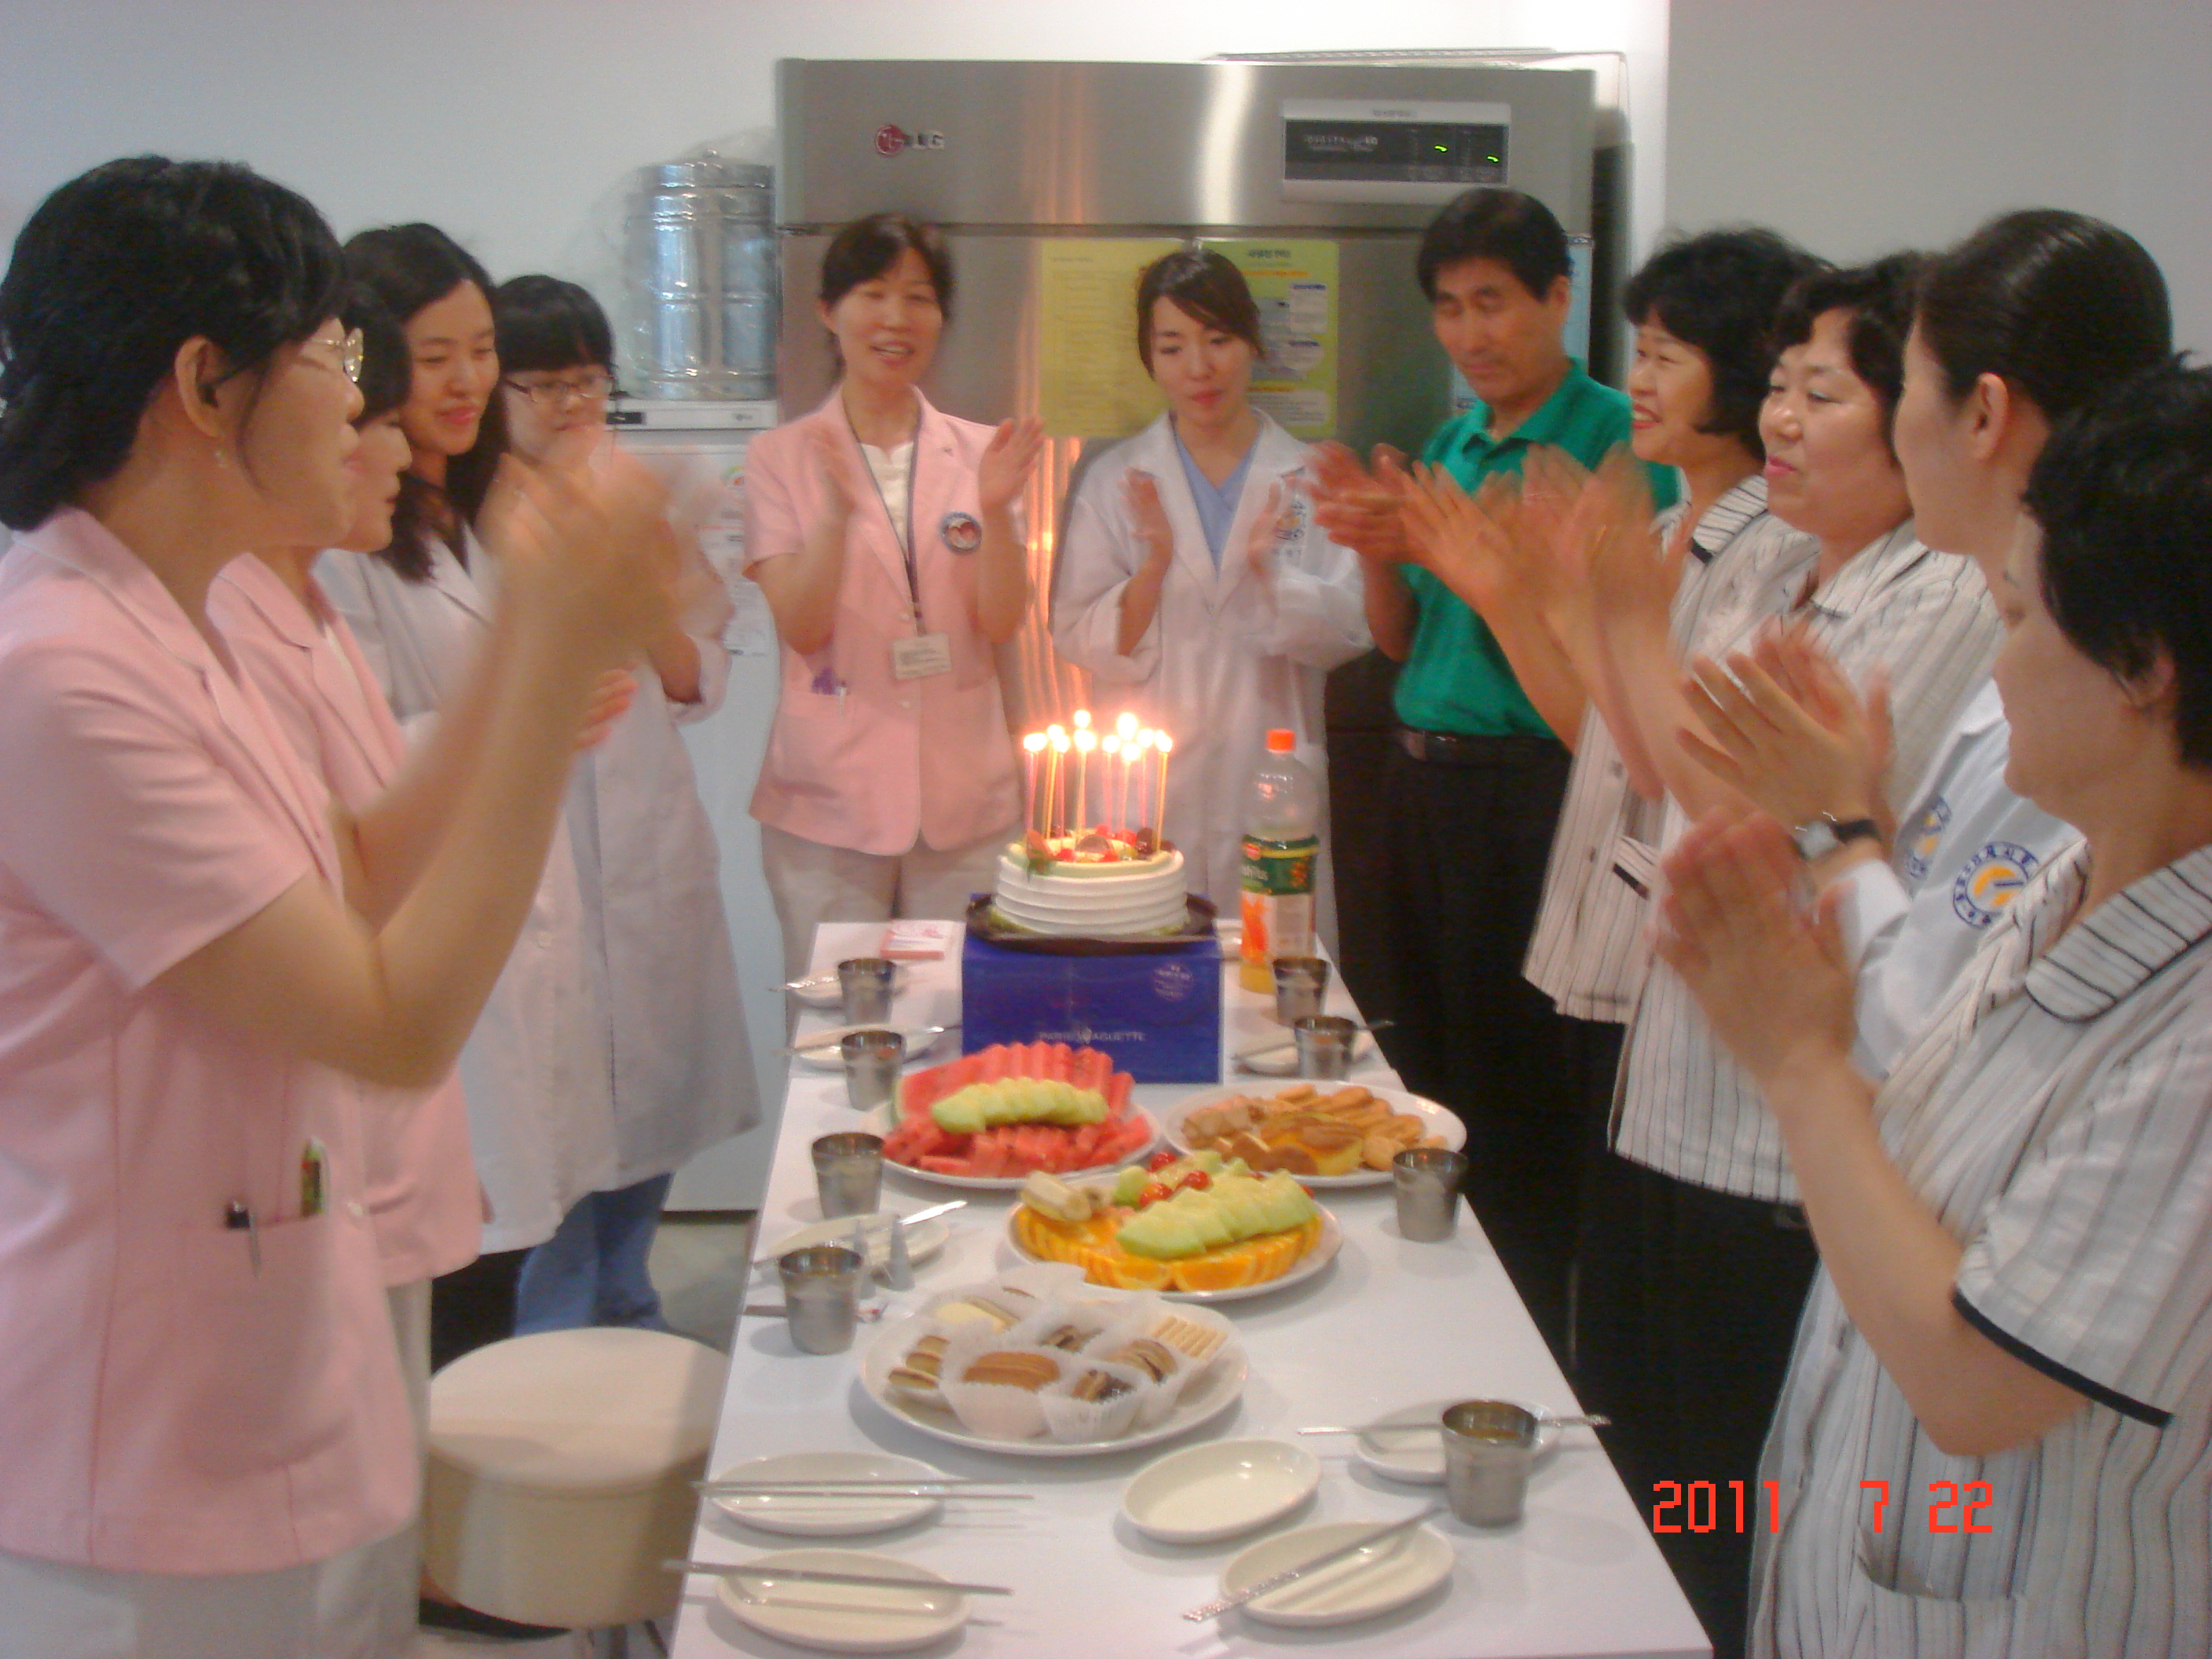 2011년 7월 22일 - 강북점 생일자 파티 게시글의 2번째 첨부파일입니다.